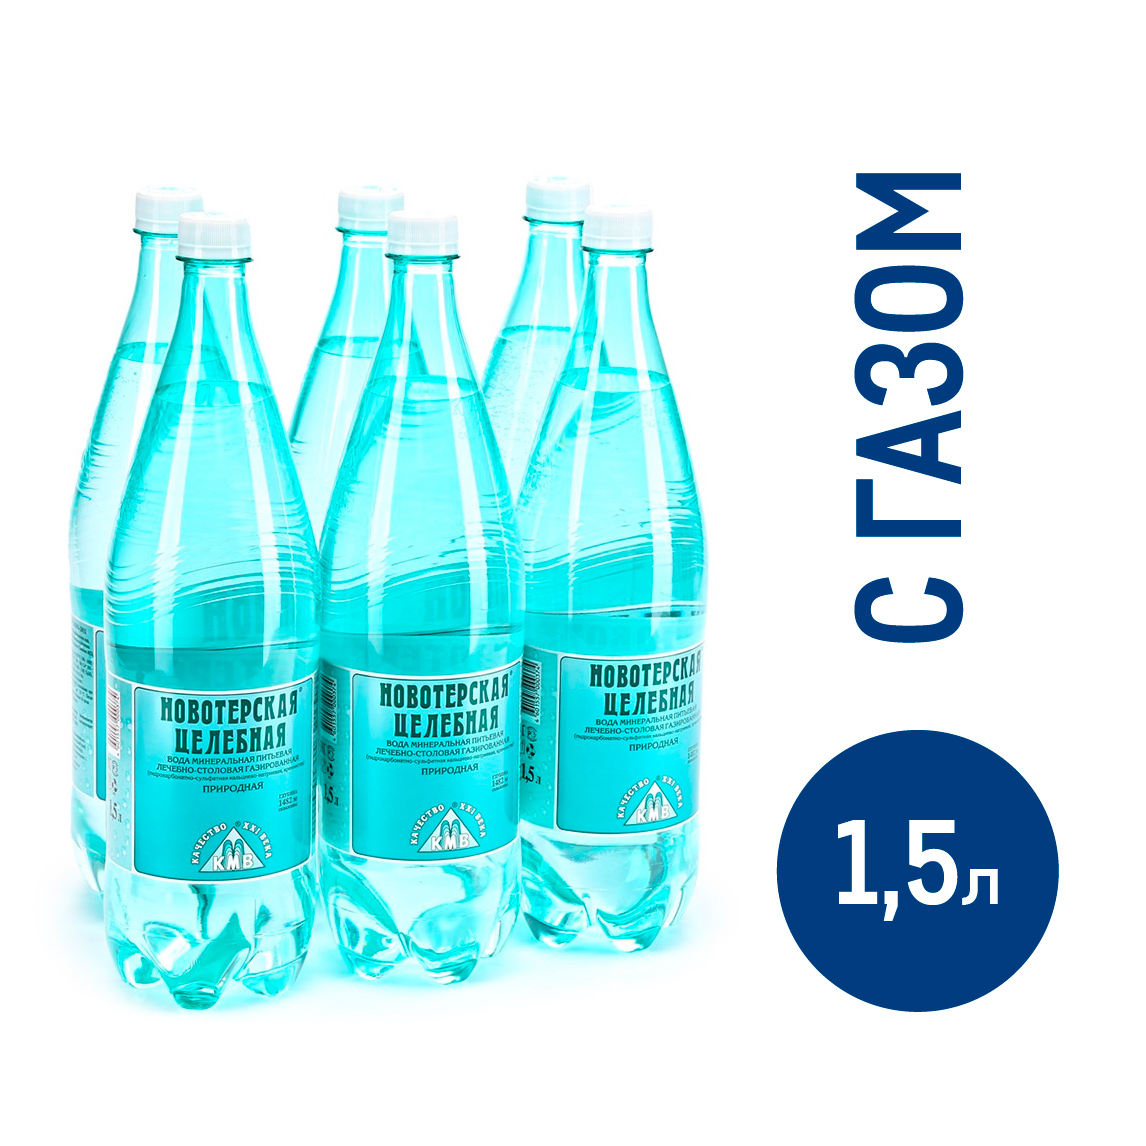 Вода Новотерская минеральная целебная питьевая газированная, 1.5л x 6 шт  купить с доставкой на дом, цены в интернет-магазине